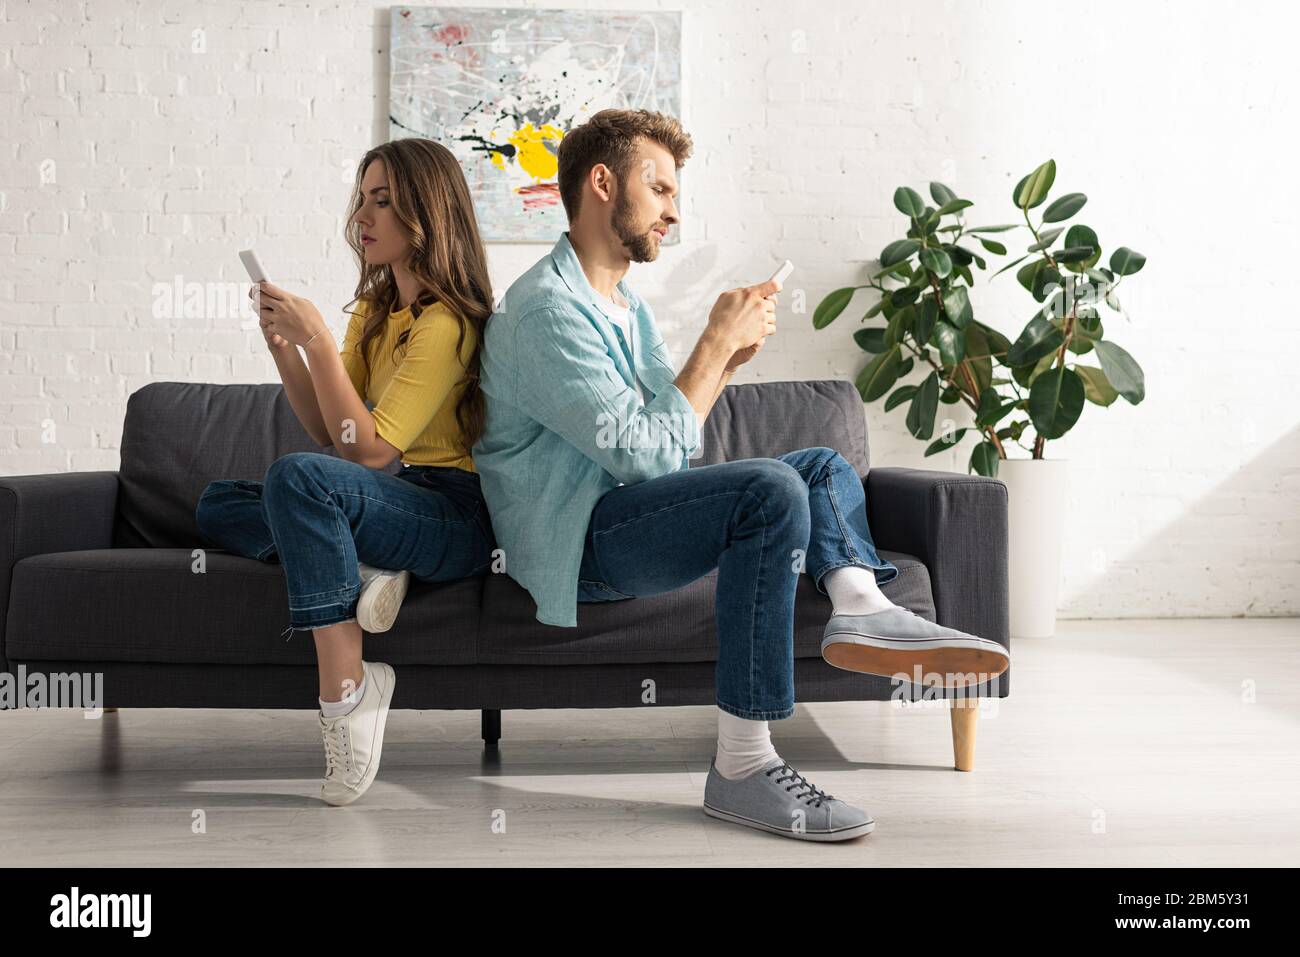 Vue latérale du couple à l'aide d'un smartphone tout en étant assis dos à dos sur le canapé Banque D'Images